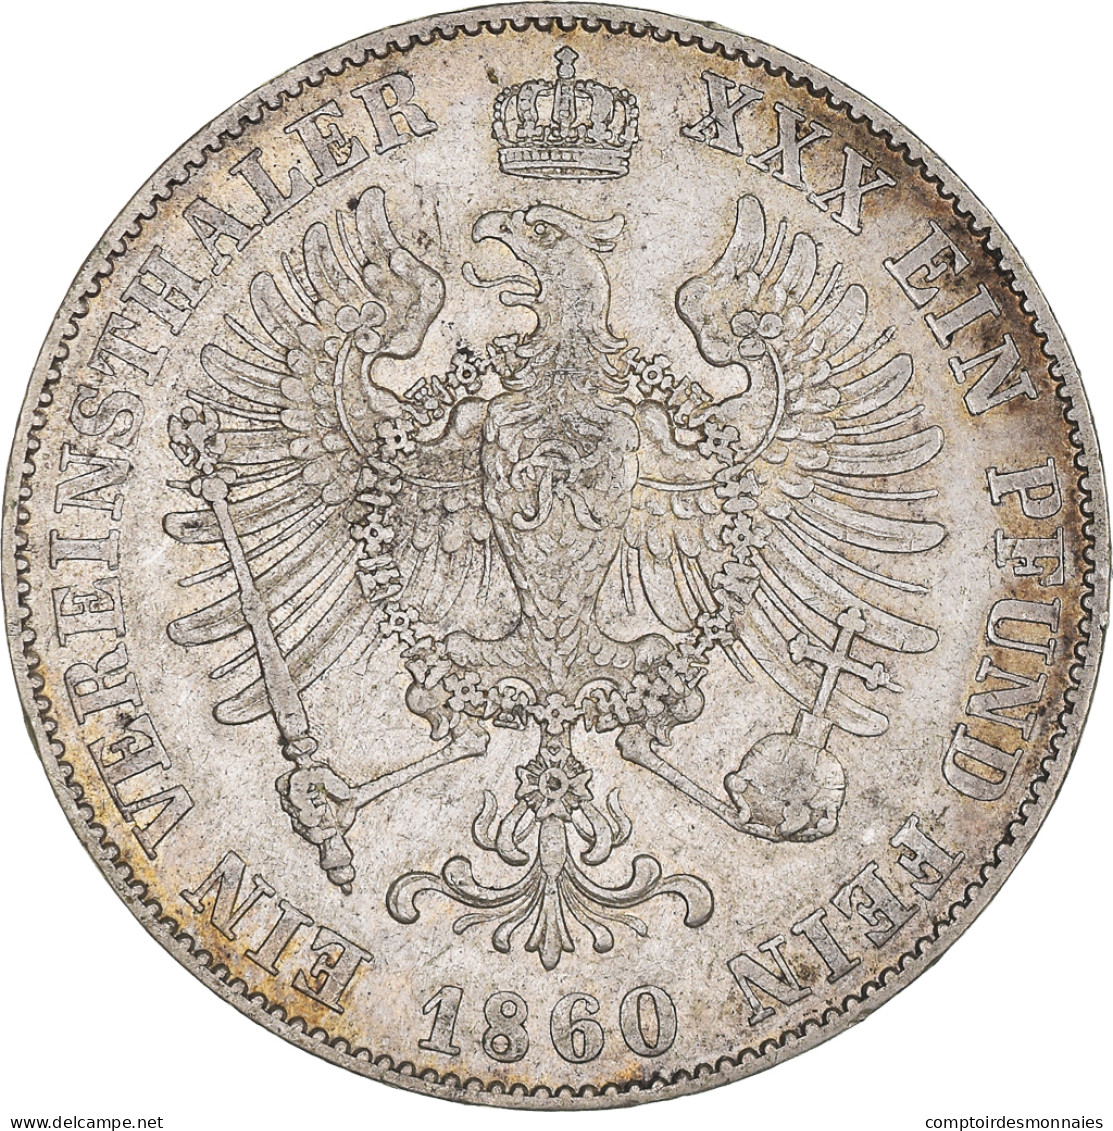 Monnaie, Etats Allemands, PRUSSIA, Friedrich Wilhelm IV, Thaler, 1860, Berlin - Taler Et Doppeltaler